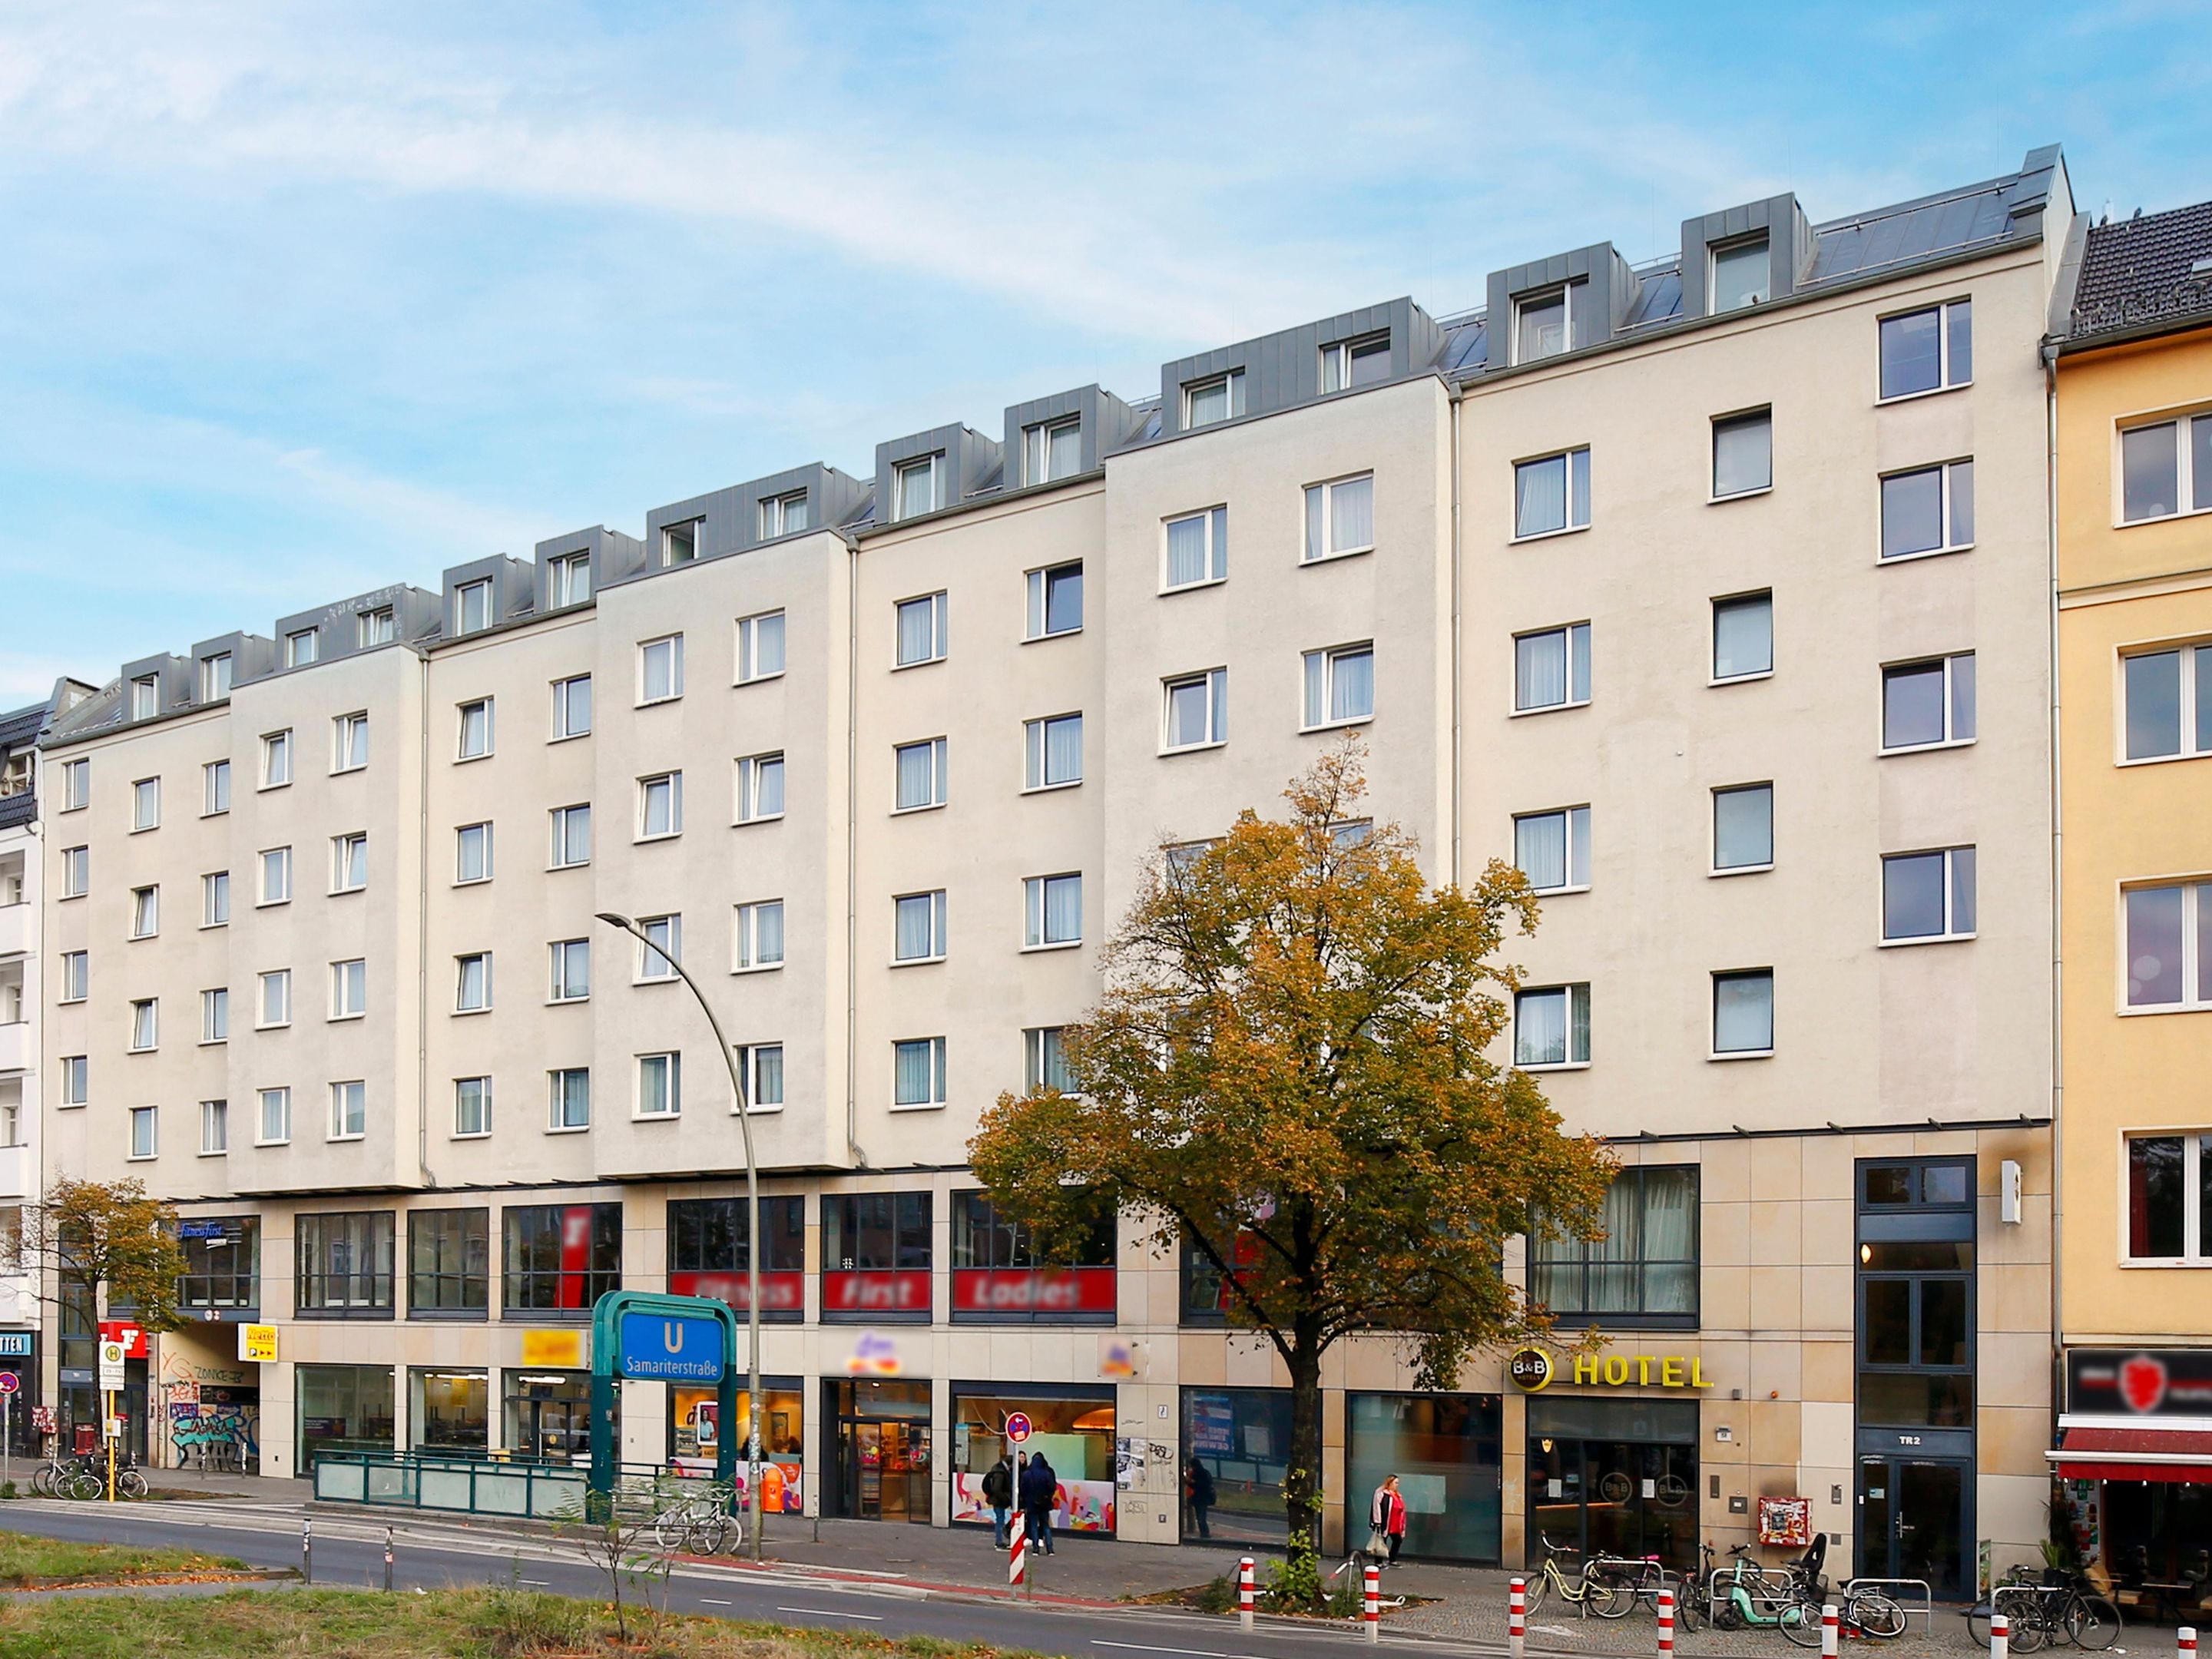 B&B HOTEL Berlin City-Ost, Frankfurter Allee 57-59 in Berlin